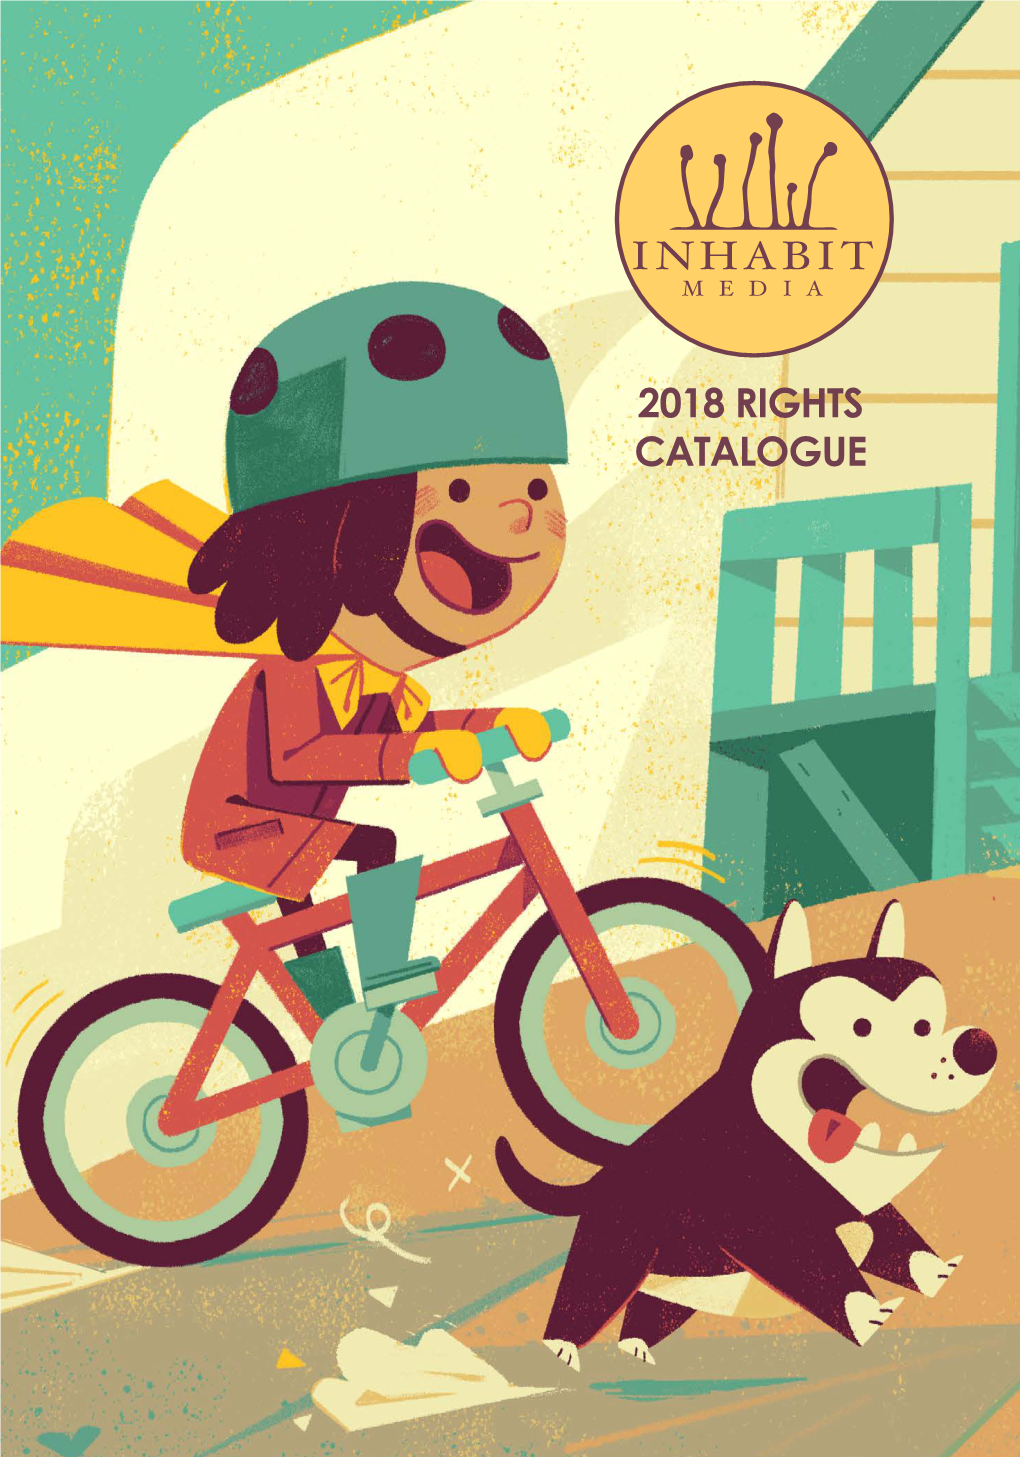 2018 Rights Catalogue 2018 Rights Catalogue